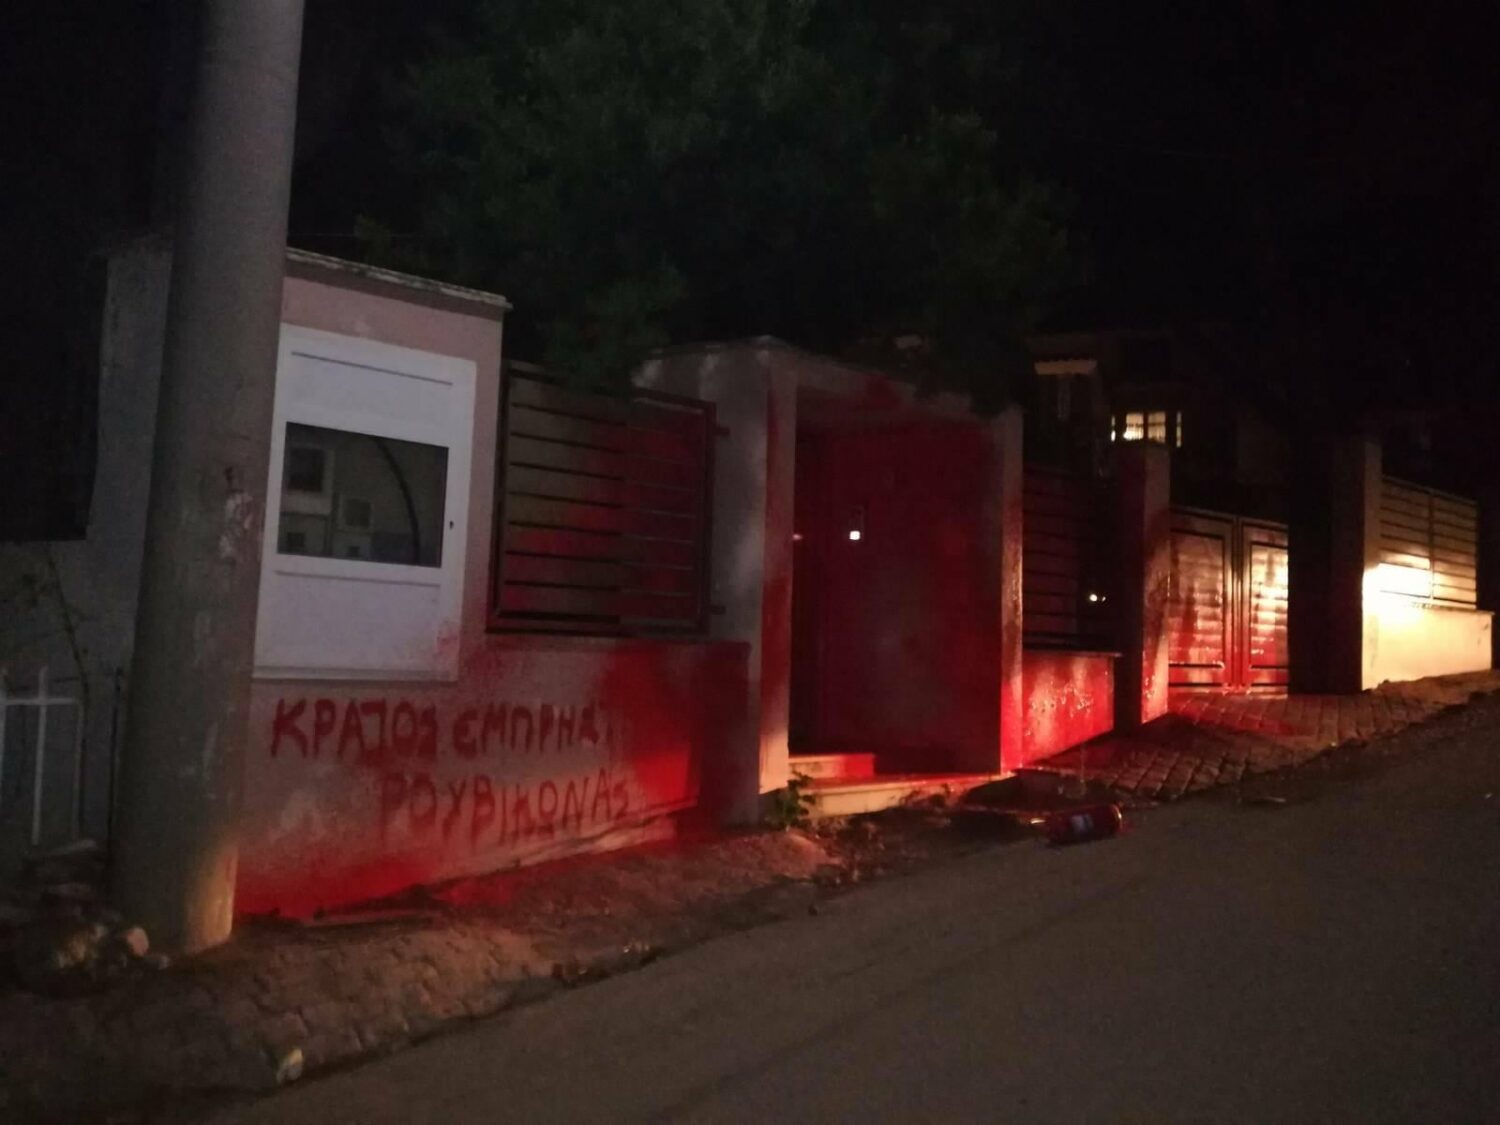 Ομάδα αγνώστων μετέβησαν στο σπίτι του υπουργού Περιβάλλοντος στο Κρυονέρι, και έγραψαν με κόκκινες μπογιές στην περίφραξη του κτιρίου, προκαλώντας υλικές ζημιές, ενώ φεύγοντας φωνάξανε συνθήματα.